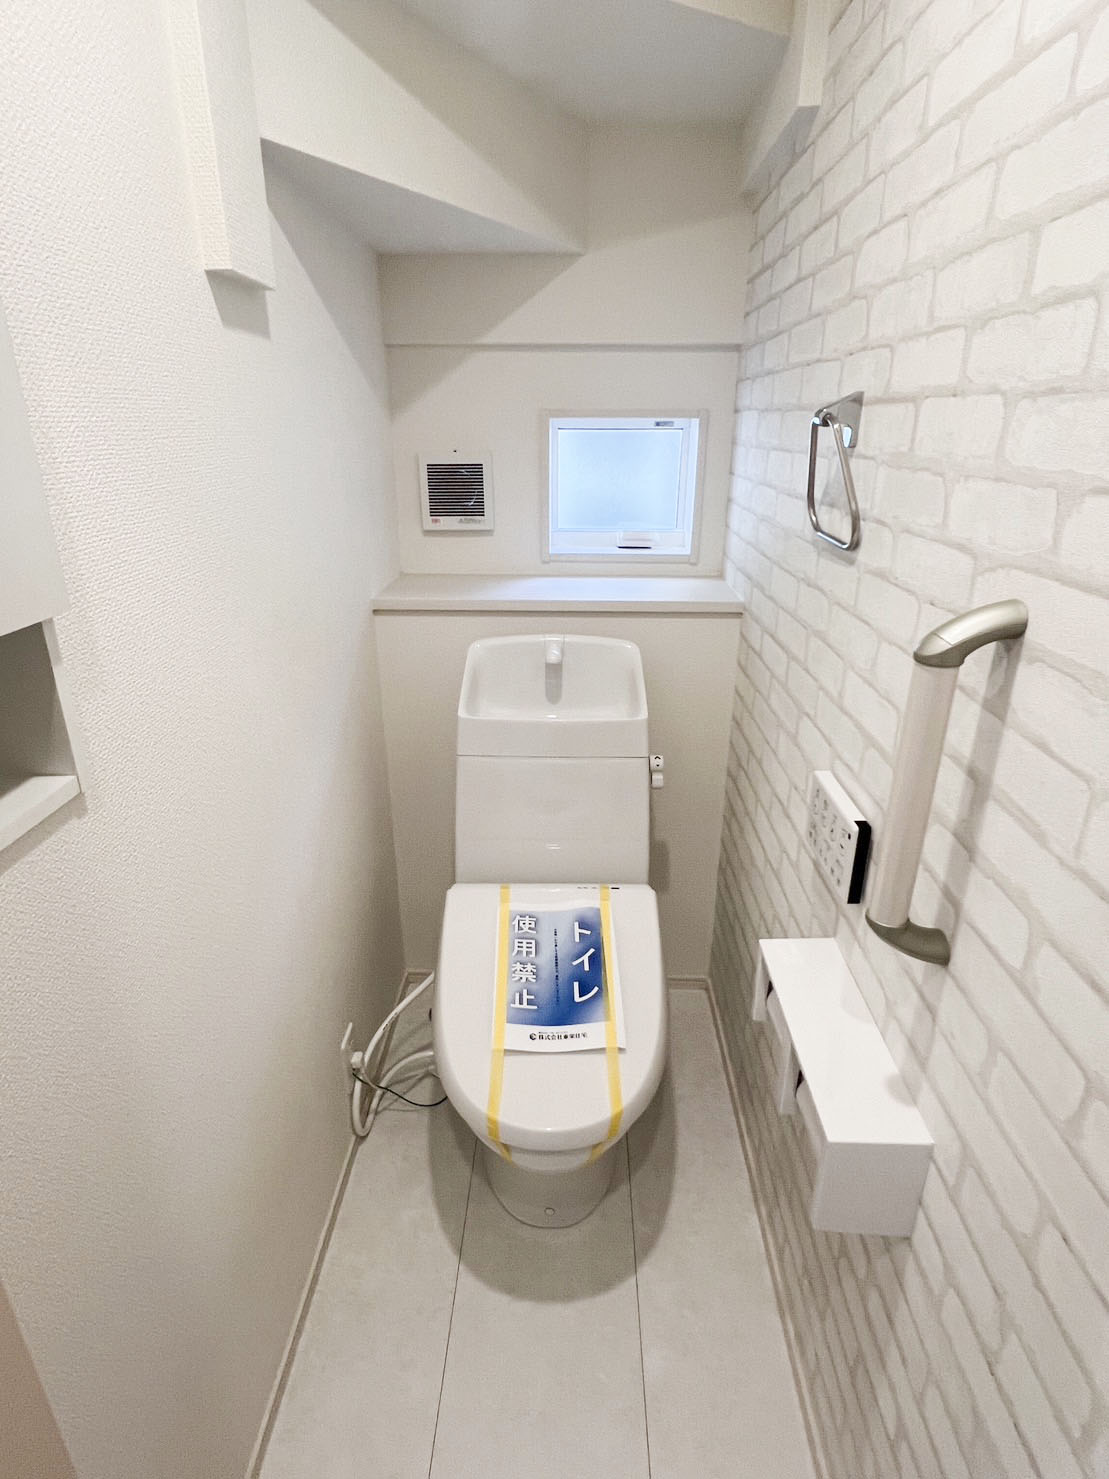 【トイレ】1階、2階にトイレがあります。水ハネしにくく手洗いしやすい形状のトイレタンクです。